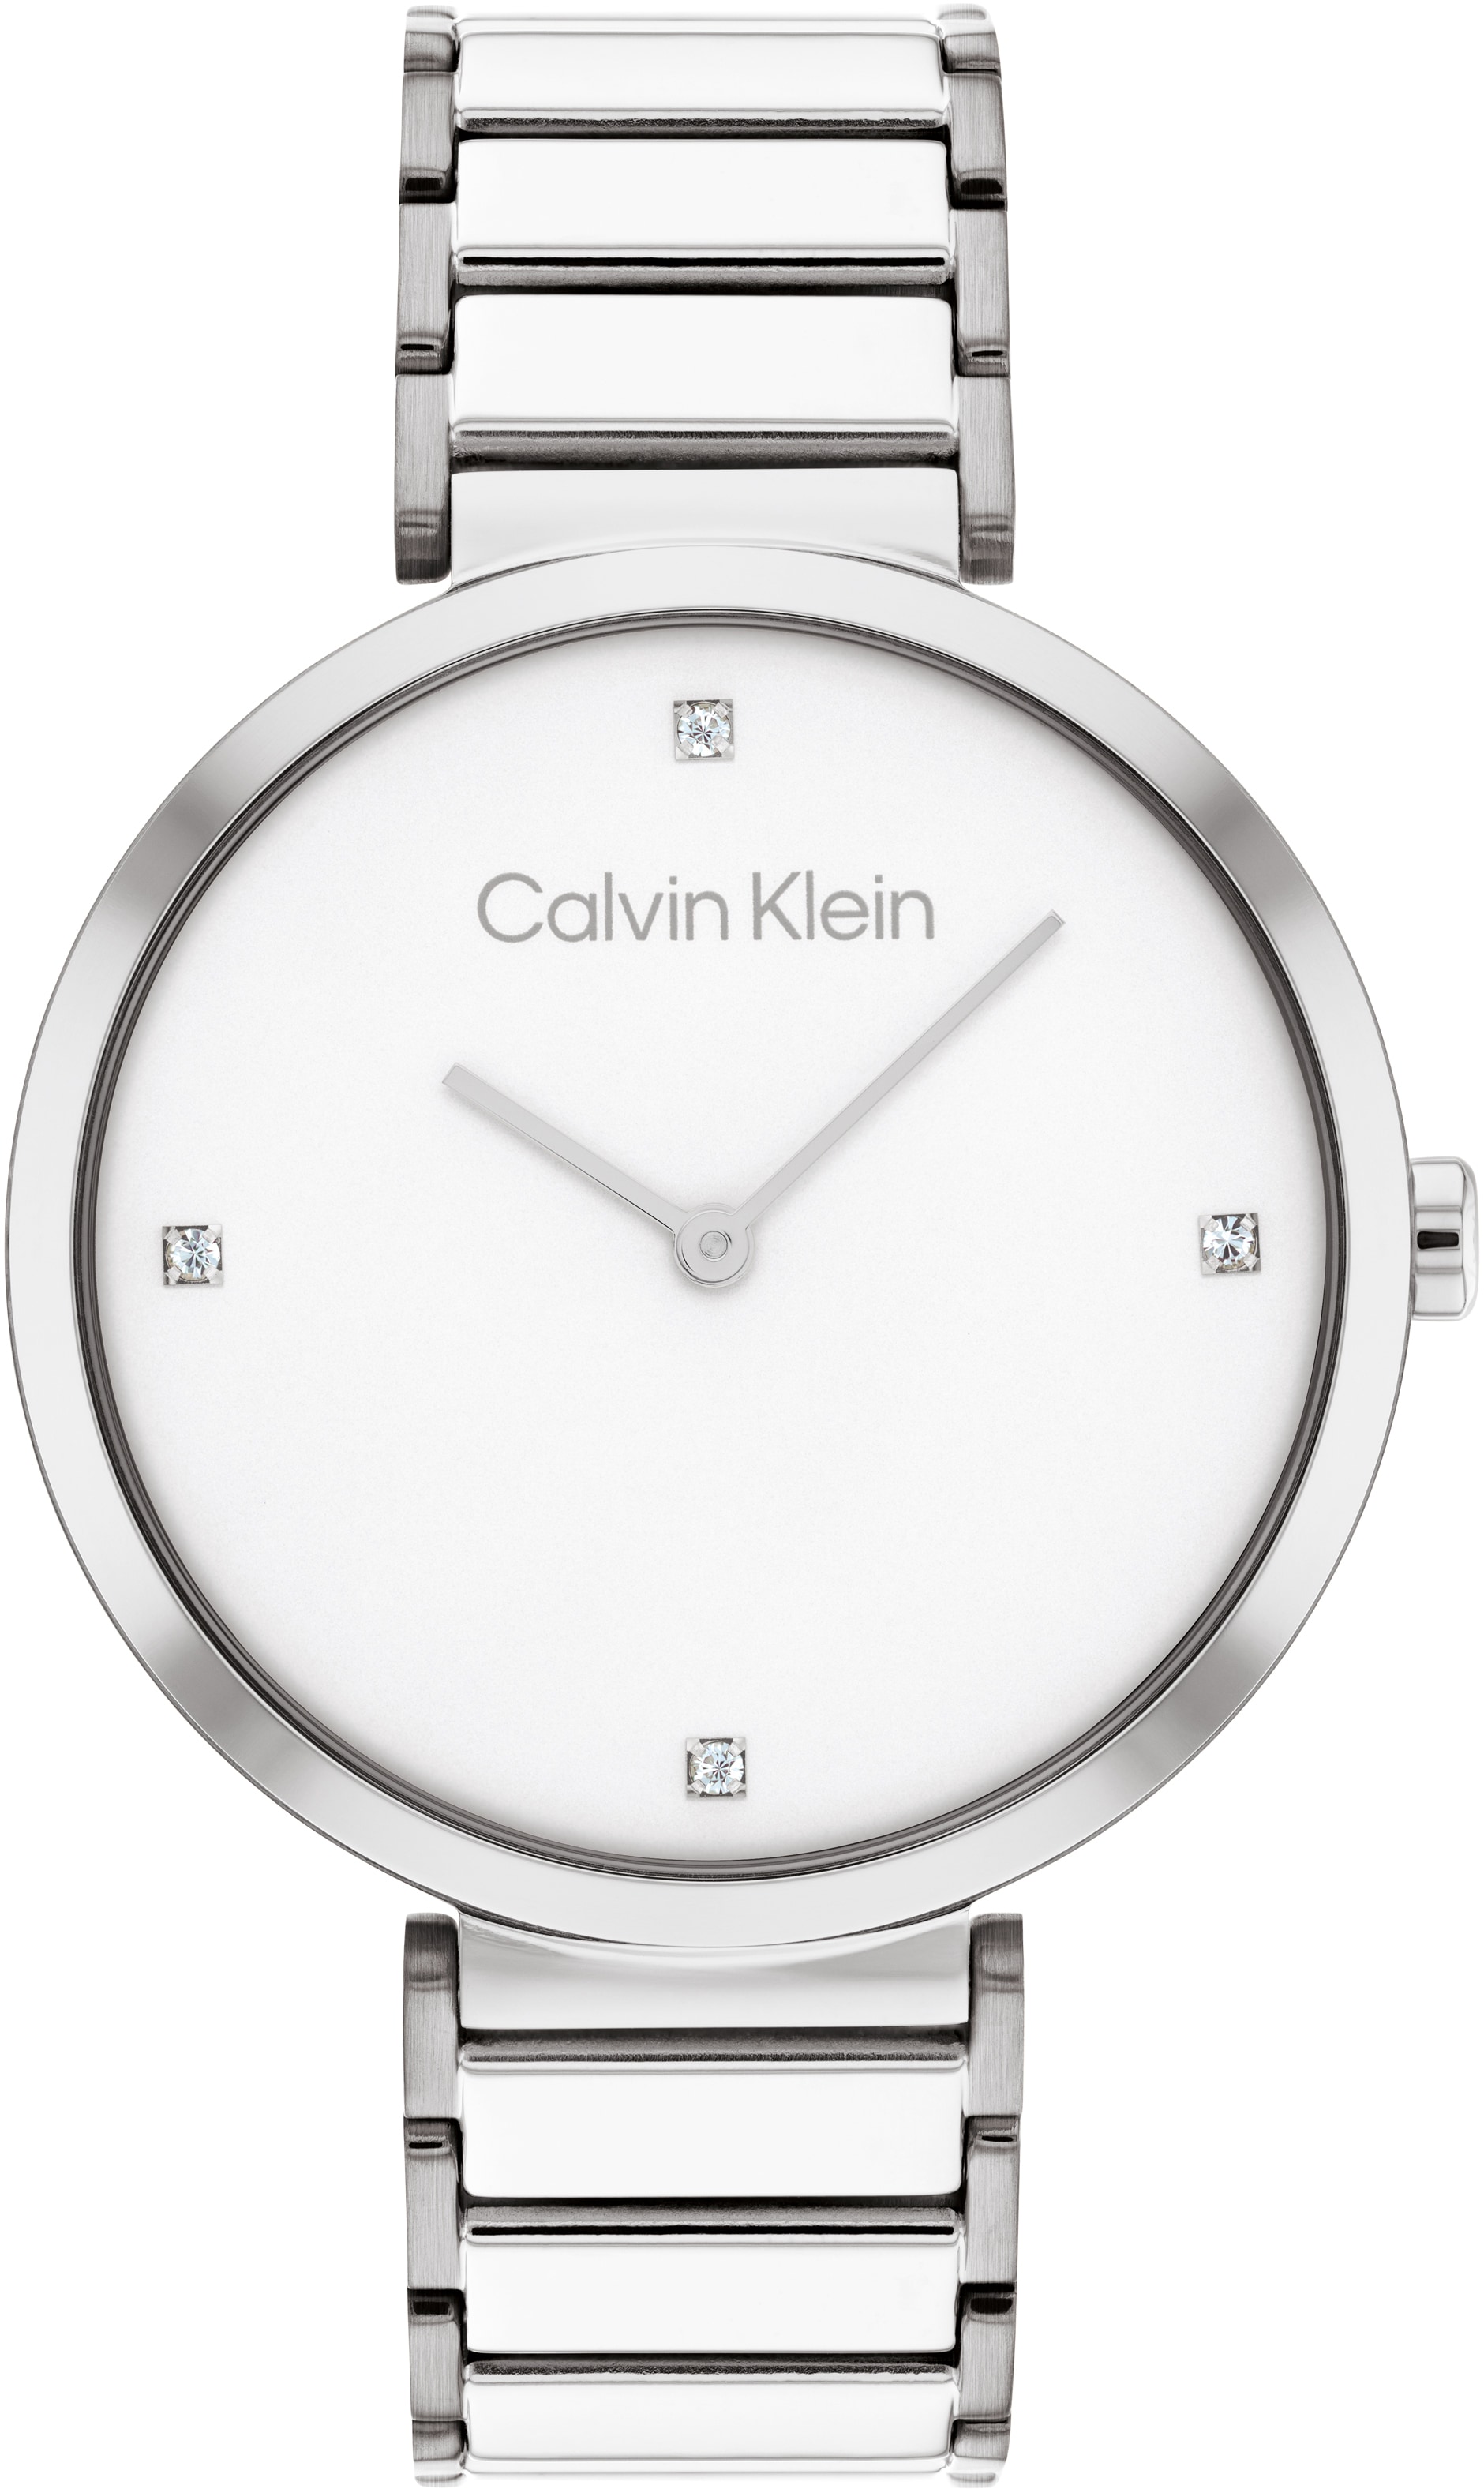 Calvin Klein Quarzuhr »Minimalistic T OTTOversand Bar mm, 36 bei 25200137«